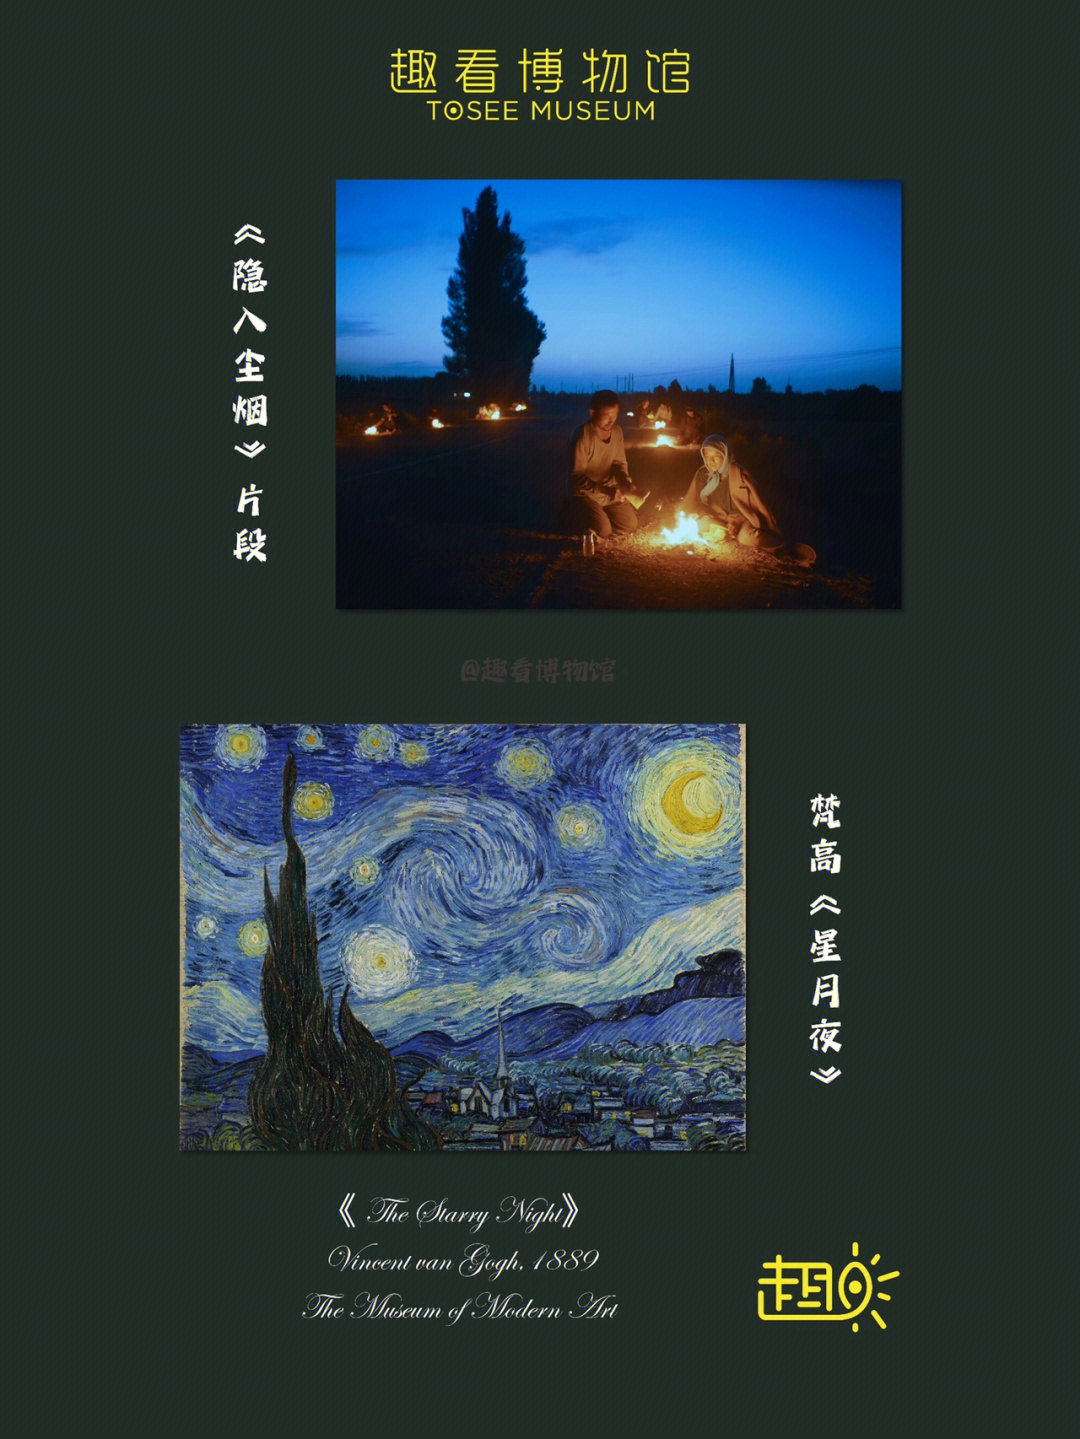 电影如诗般的画面让人想到梵高笔下的星月夜米勒画中的播种者每一个